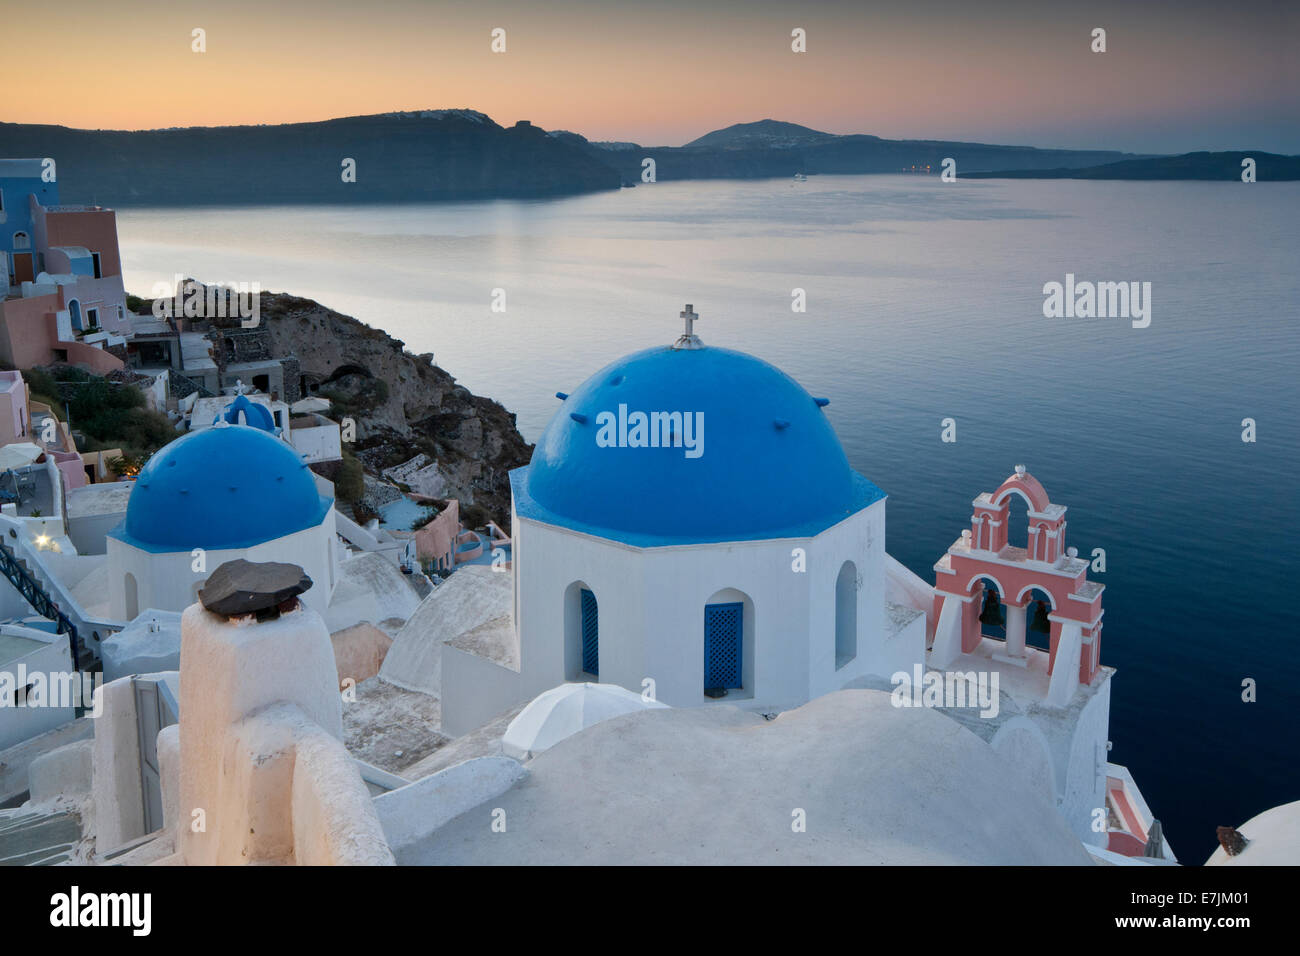 Blu chiese a cupola che si affaccia sulla caldera, Oia - Santorini, Cicladi, isole greche, Grecia, Europa Foto Stock